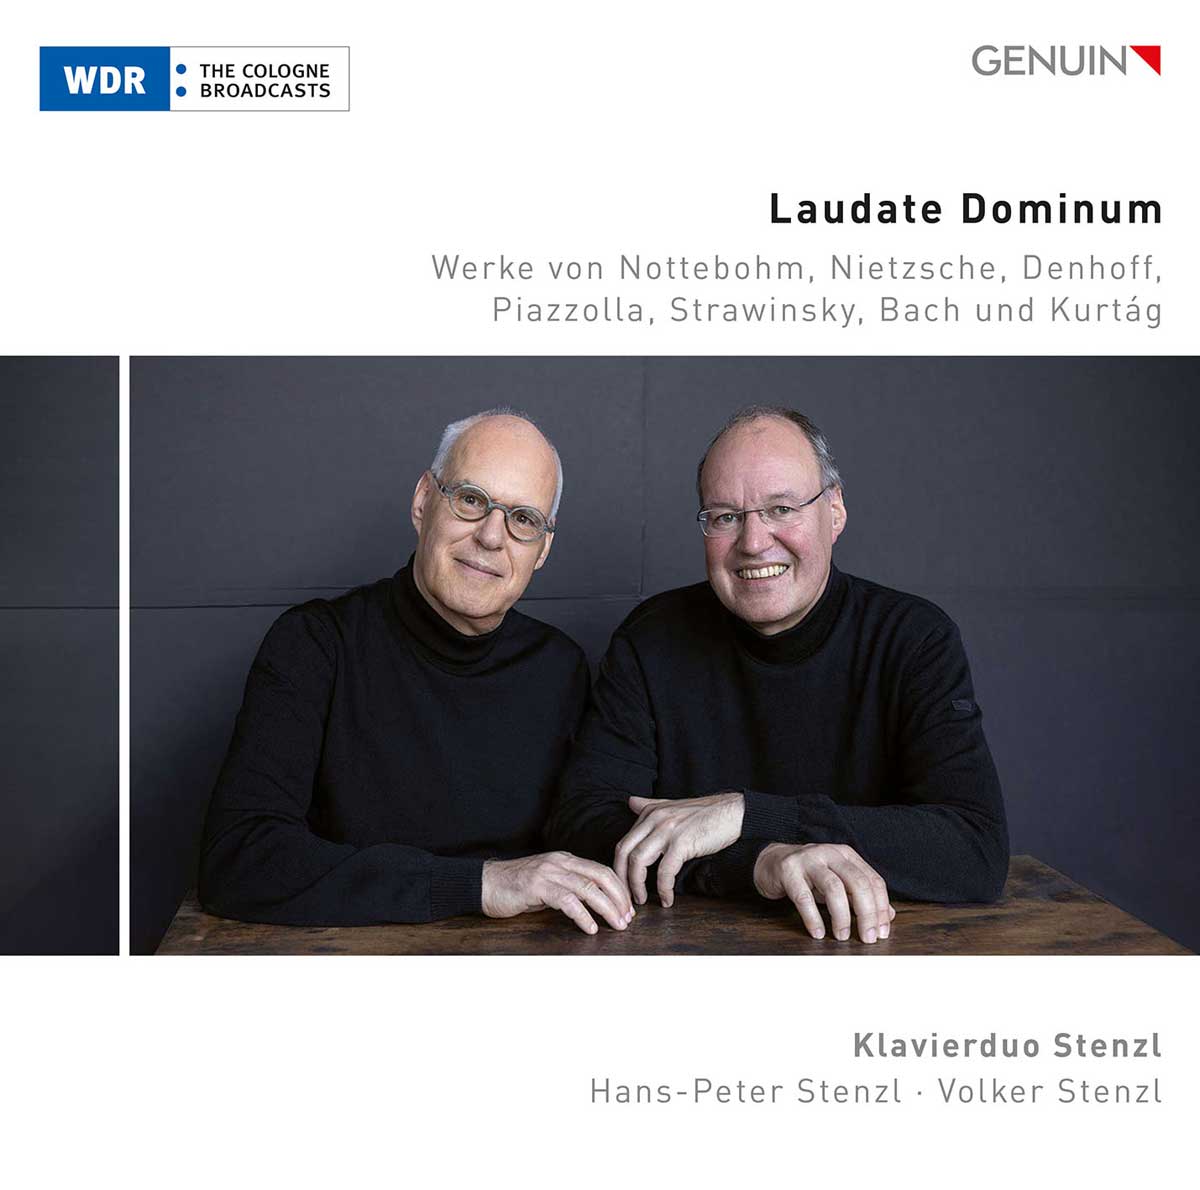 CD album cover 'Laudate Dominum' (GEN 23829) with Klavierduo Stenzl